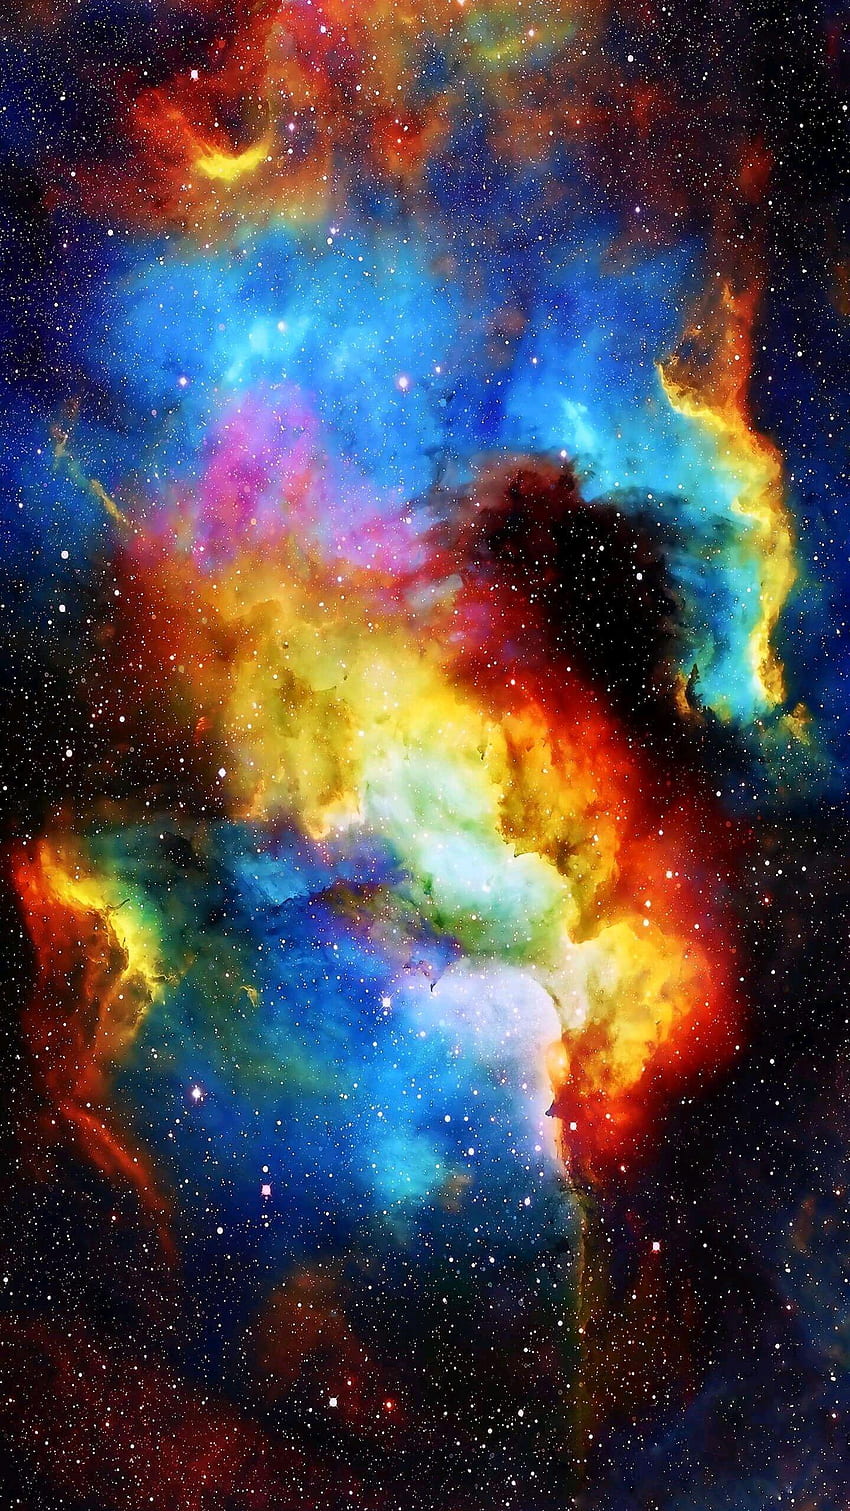 Nhìn vào hình ảnh khối khí tuyệt đẹp trong không gian, bạn sẽ được trải nghiệm cảm giác đắm mình trong không gian vô tận và khám phá những điều kỳ diệu của vũ trụ.